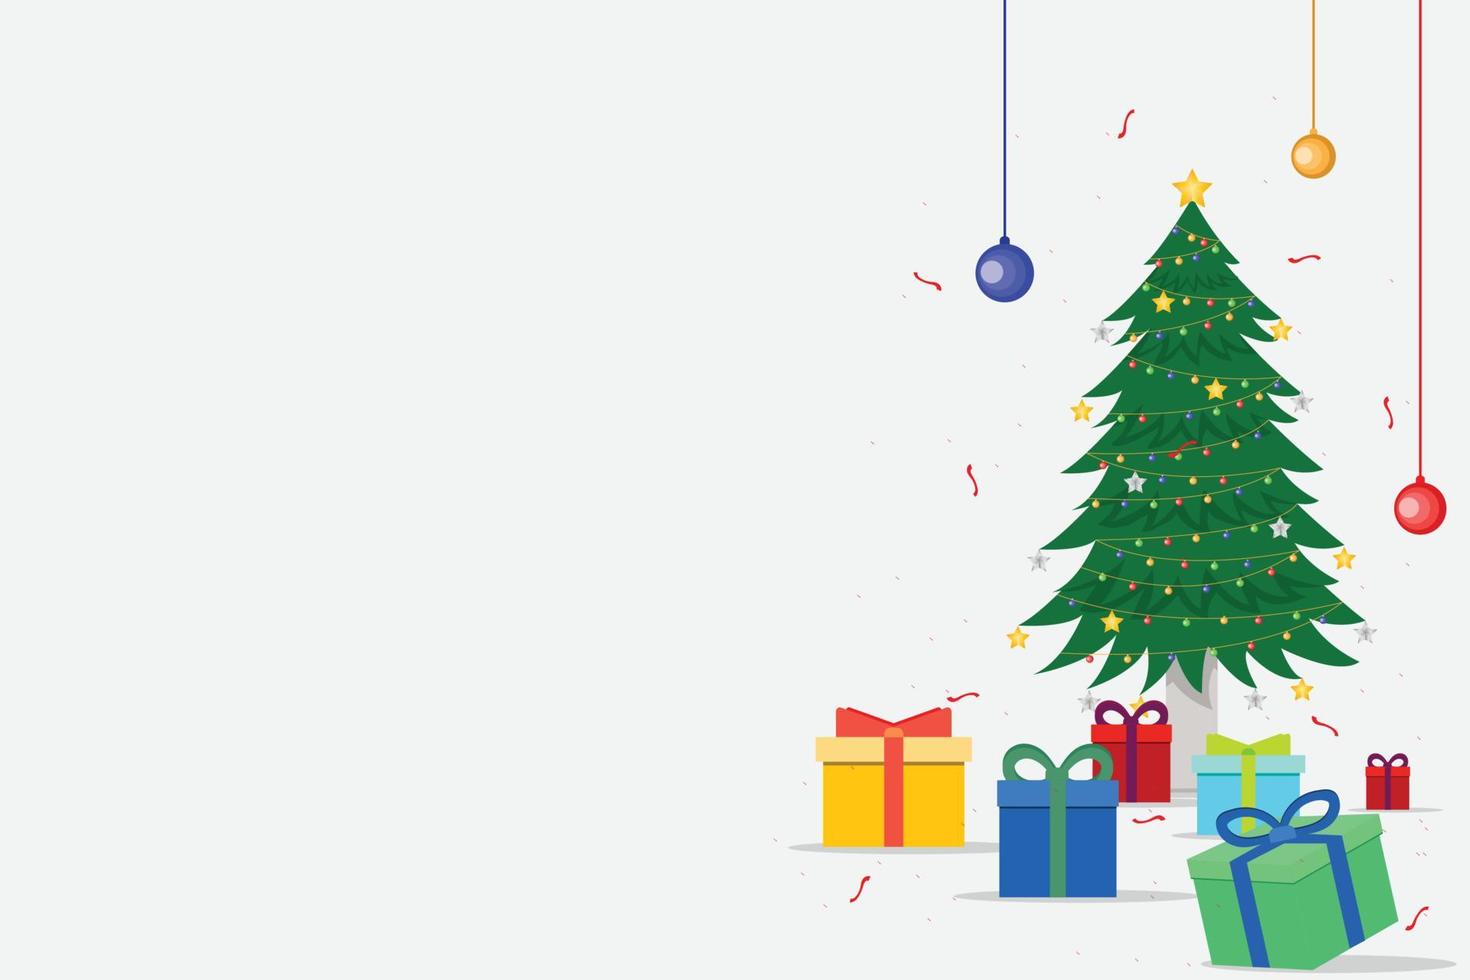 Kerstmis achtergrond met presenteert, Spar boom en sneeuwvlokken. vector illustratie